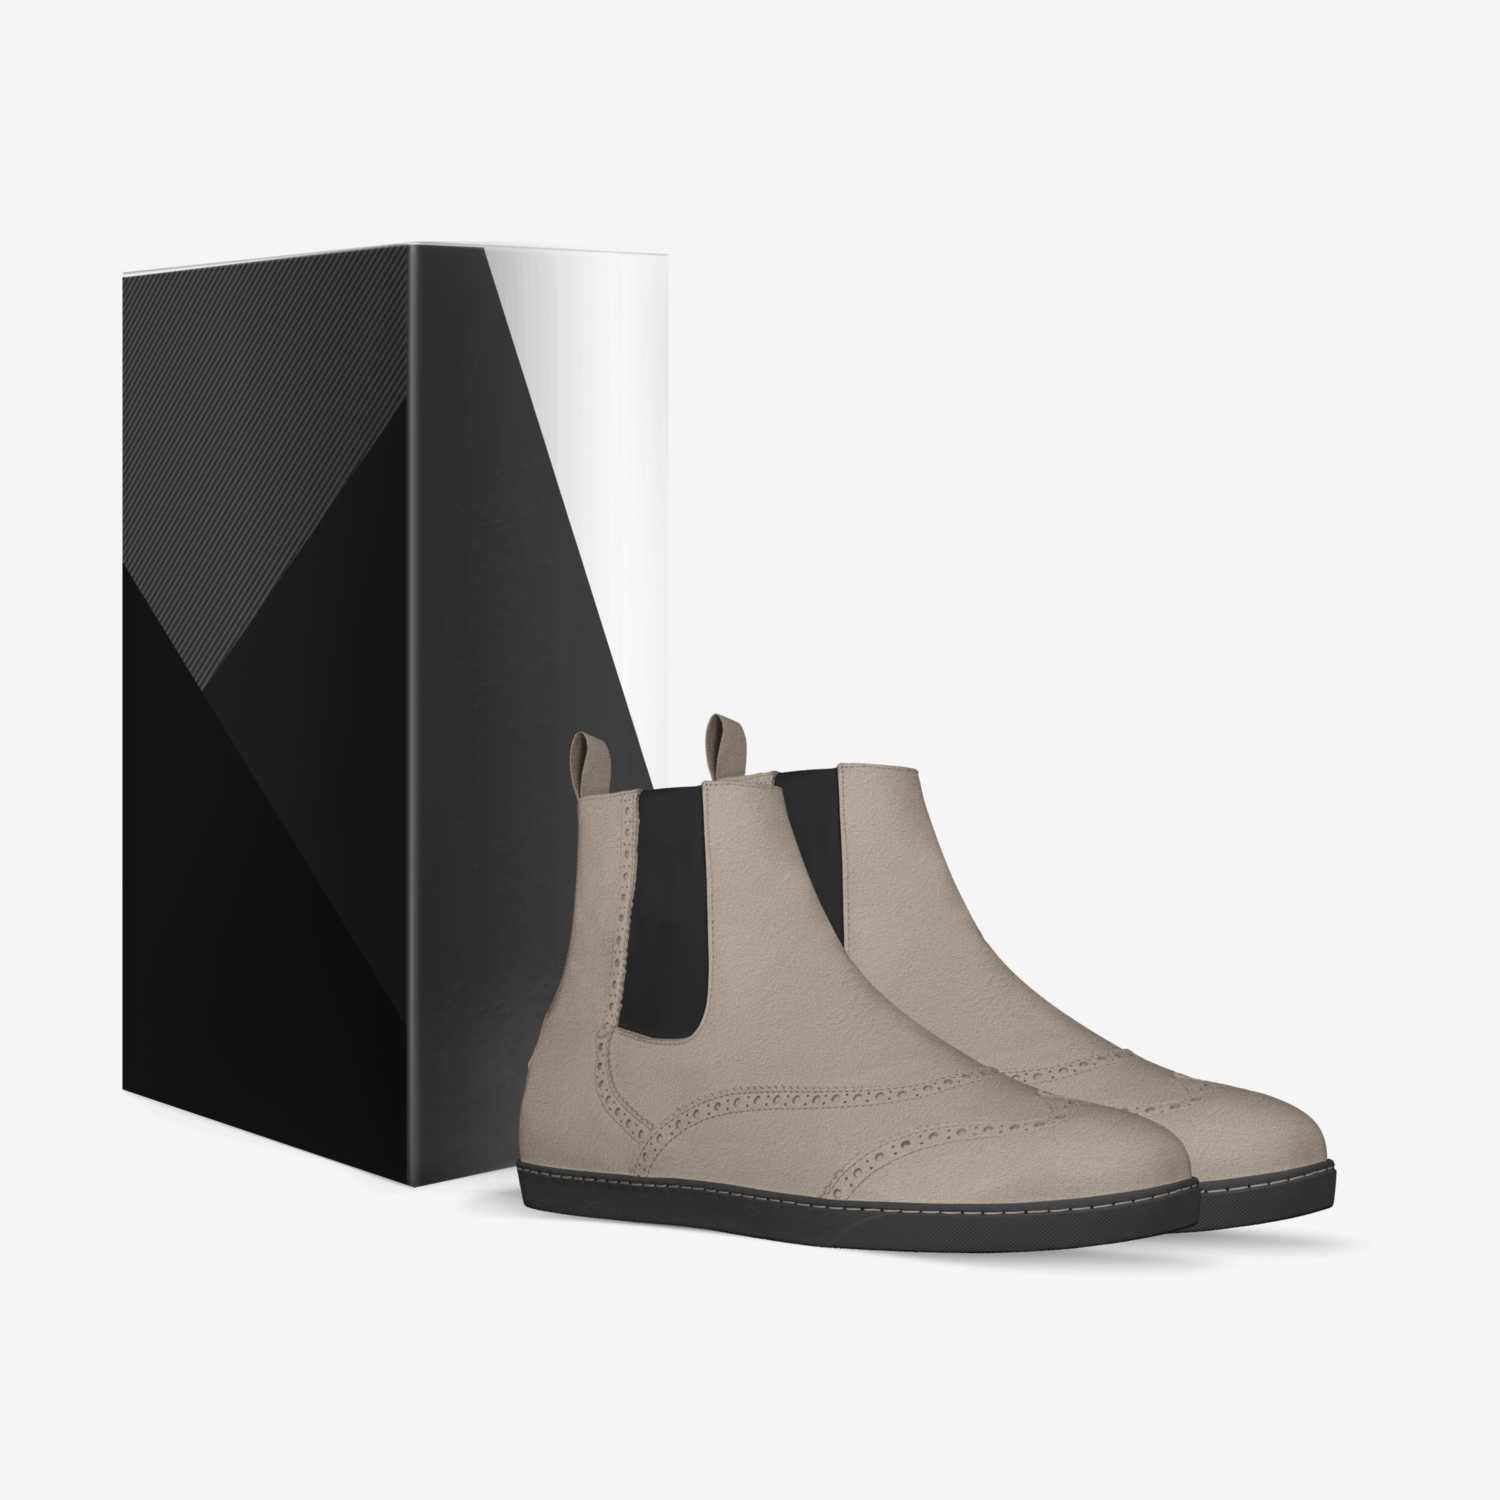 Czyz custom made in Italy shoes by Dominik Czyz | Box view